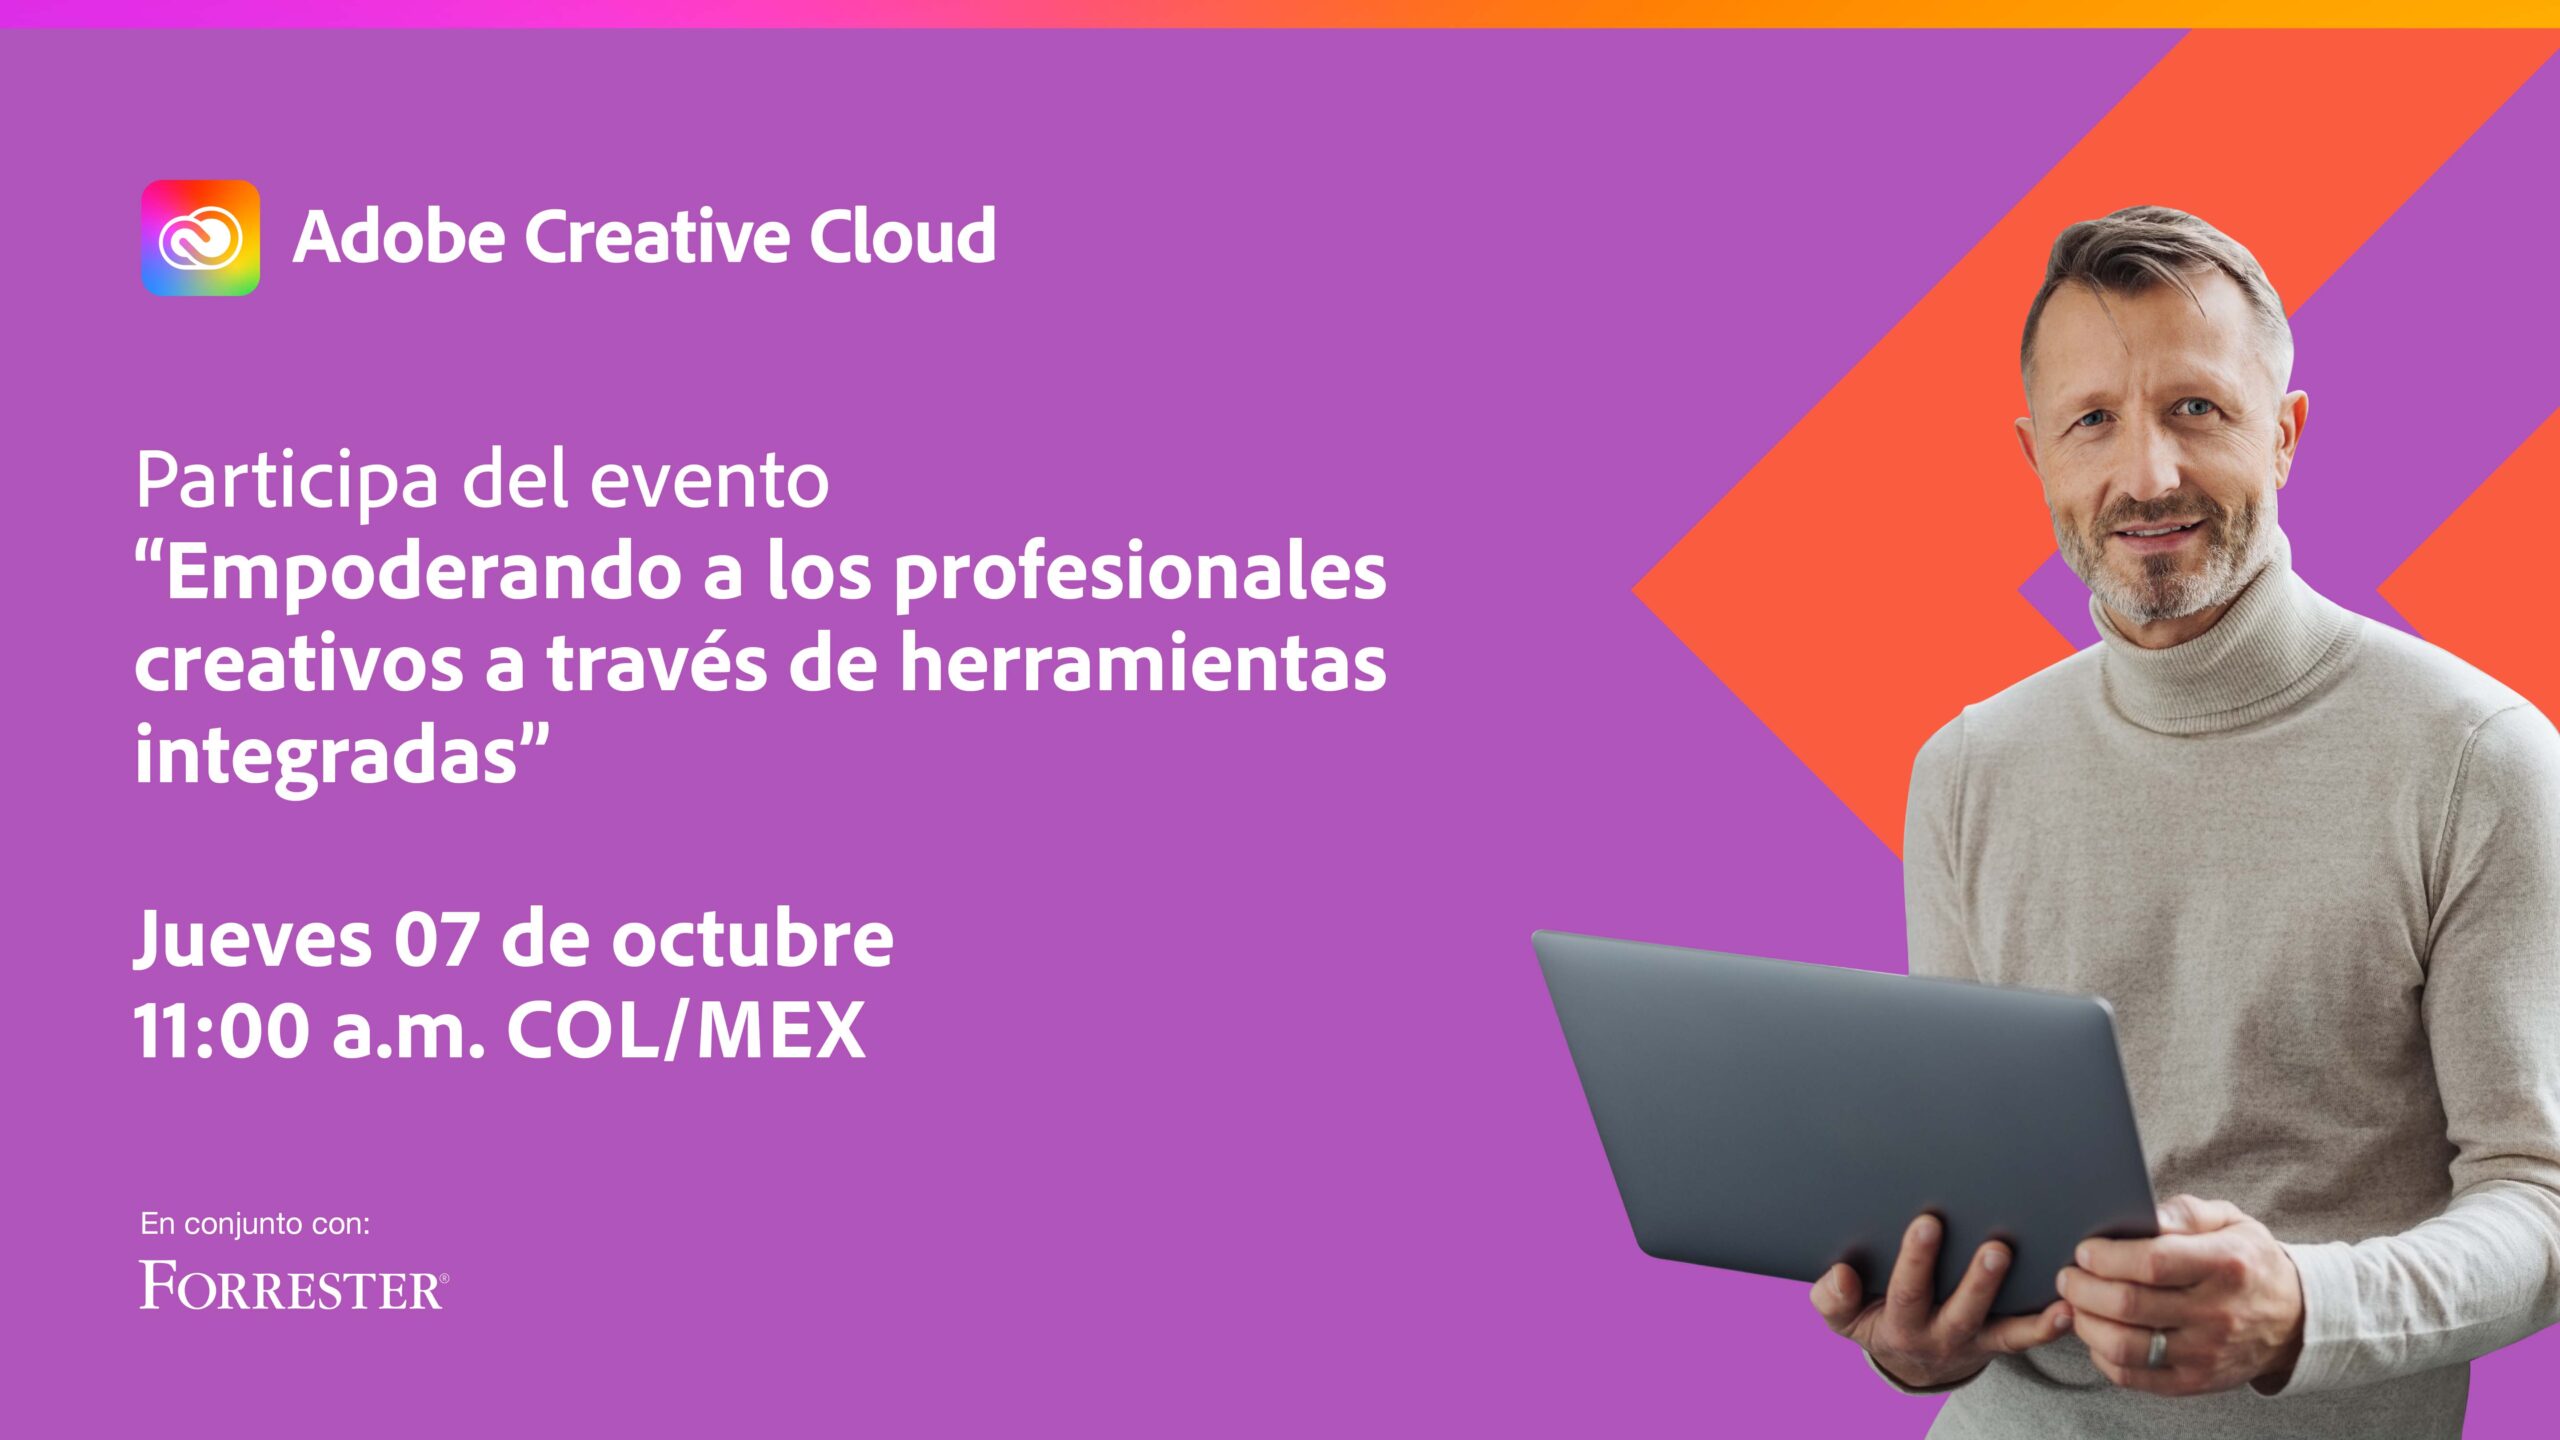 Con un panel de expertos, conformado por Joana de Quintanilha, VP y analista principal de Forrester; Beatriz Perdomo, directora de mercadeo de Adobe para Latinoamérica y Juan Pablo Forero, director creativo de Contenidos El Rey, se llevará a cabo el próximo 07 de octubre, a las 11:00 a.m. (COL-MEX-PAN-ECU-PER) 1:00 p.m. (ARG-CHI)  10:00 a.m. (CRC-SV-HON-GUA) el evento virtual "Empoderando a los profesionales creativos a través de herramientas integradas", organizado por Adobe.